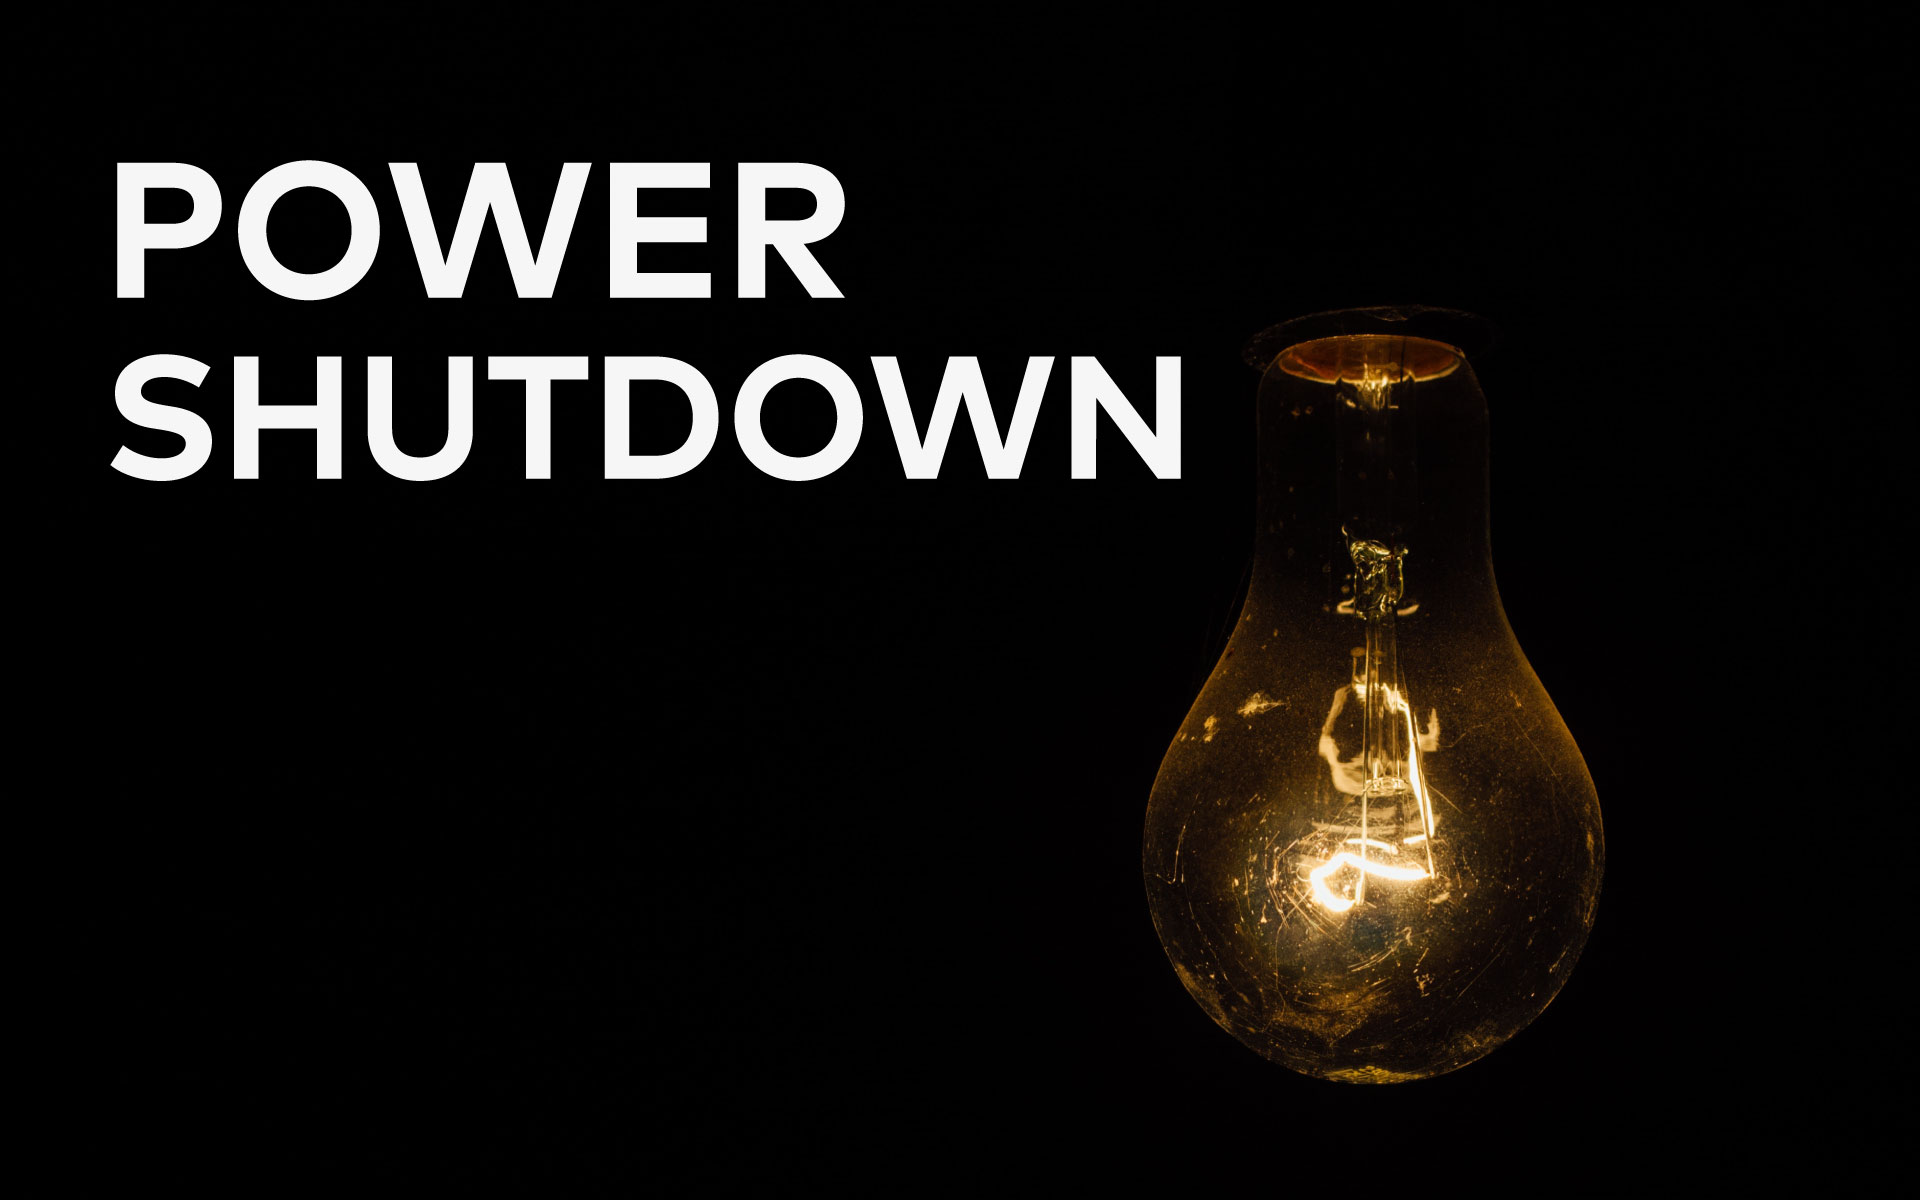 Power shutdown Kashmir Indepth